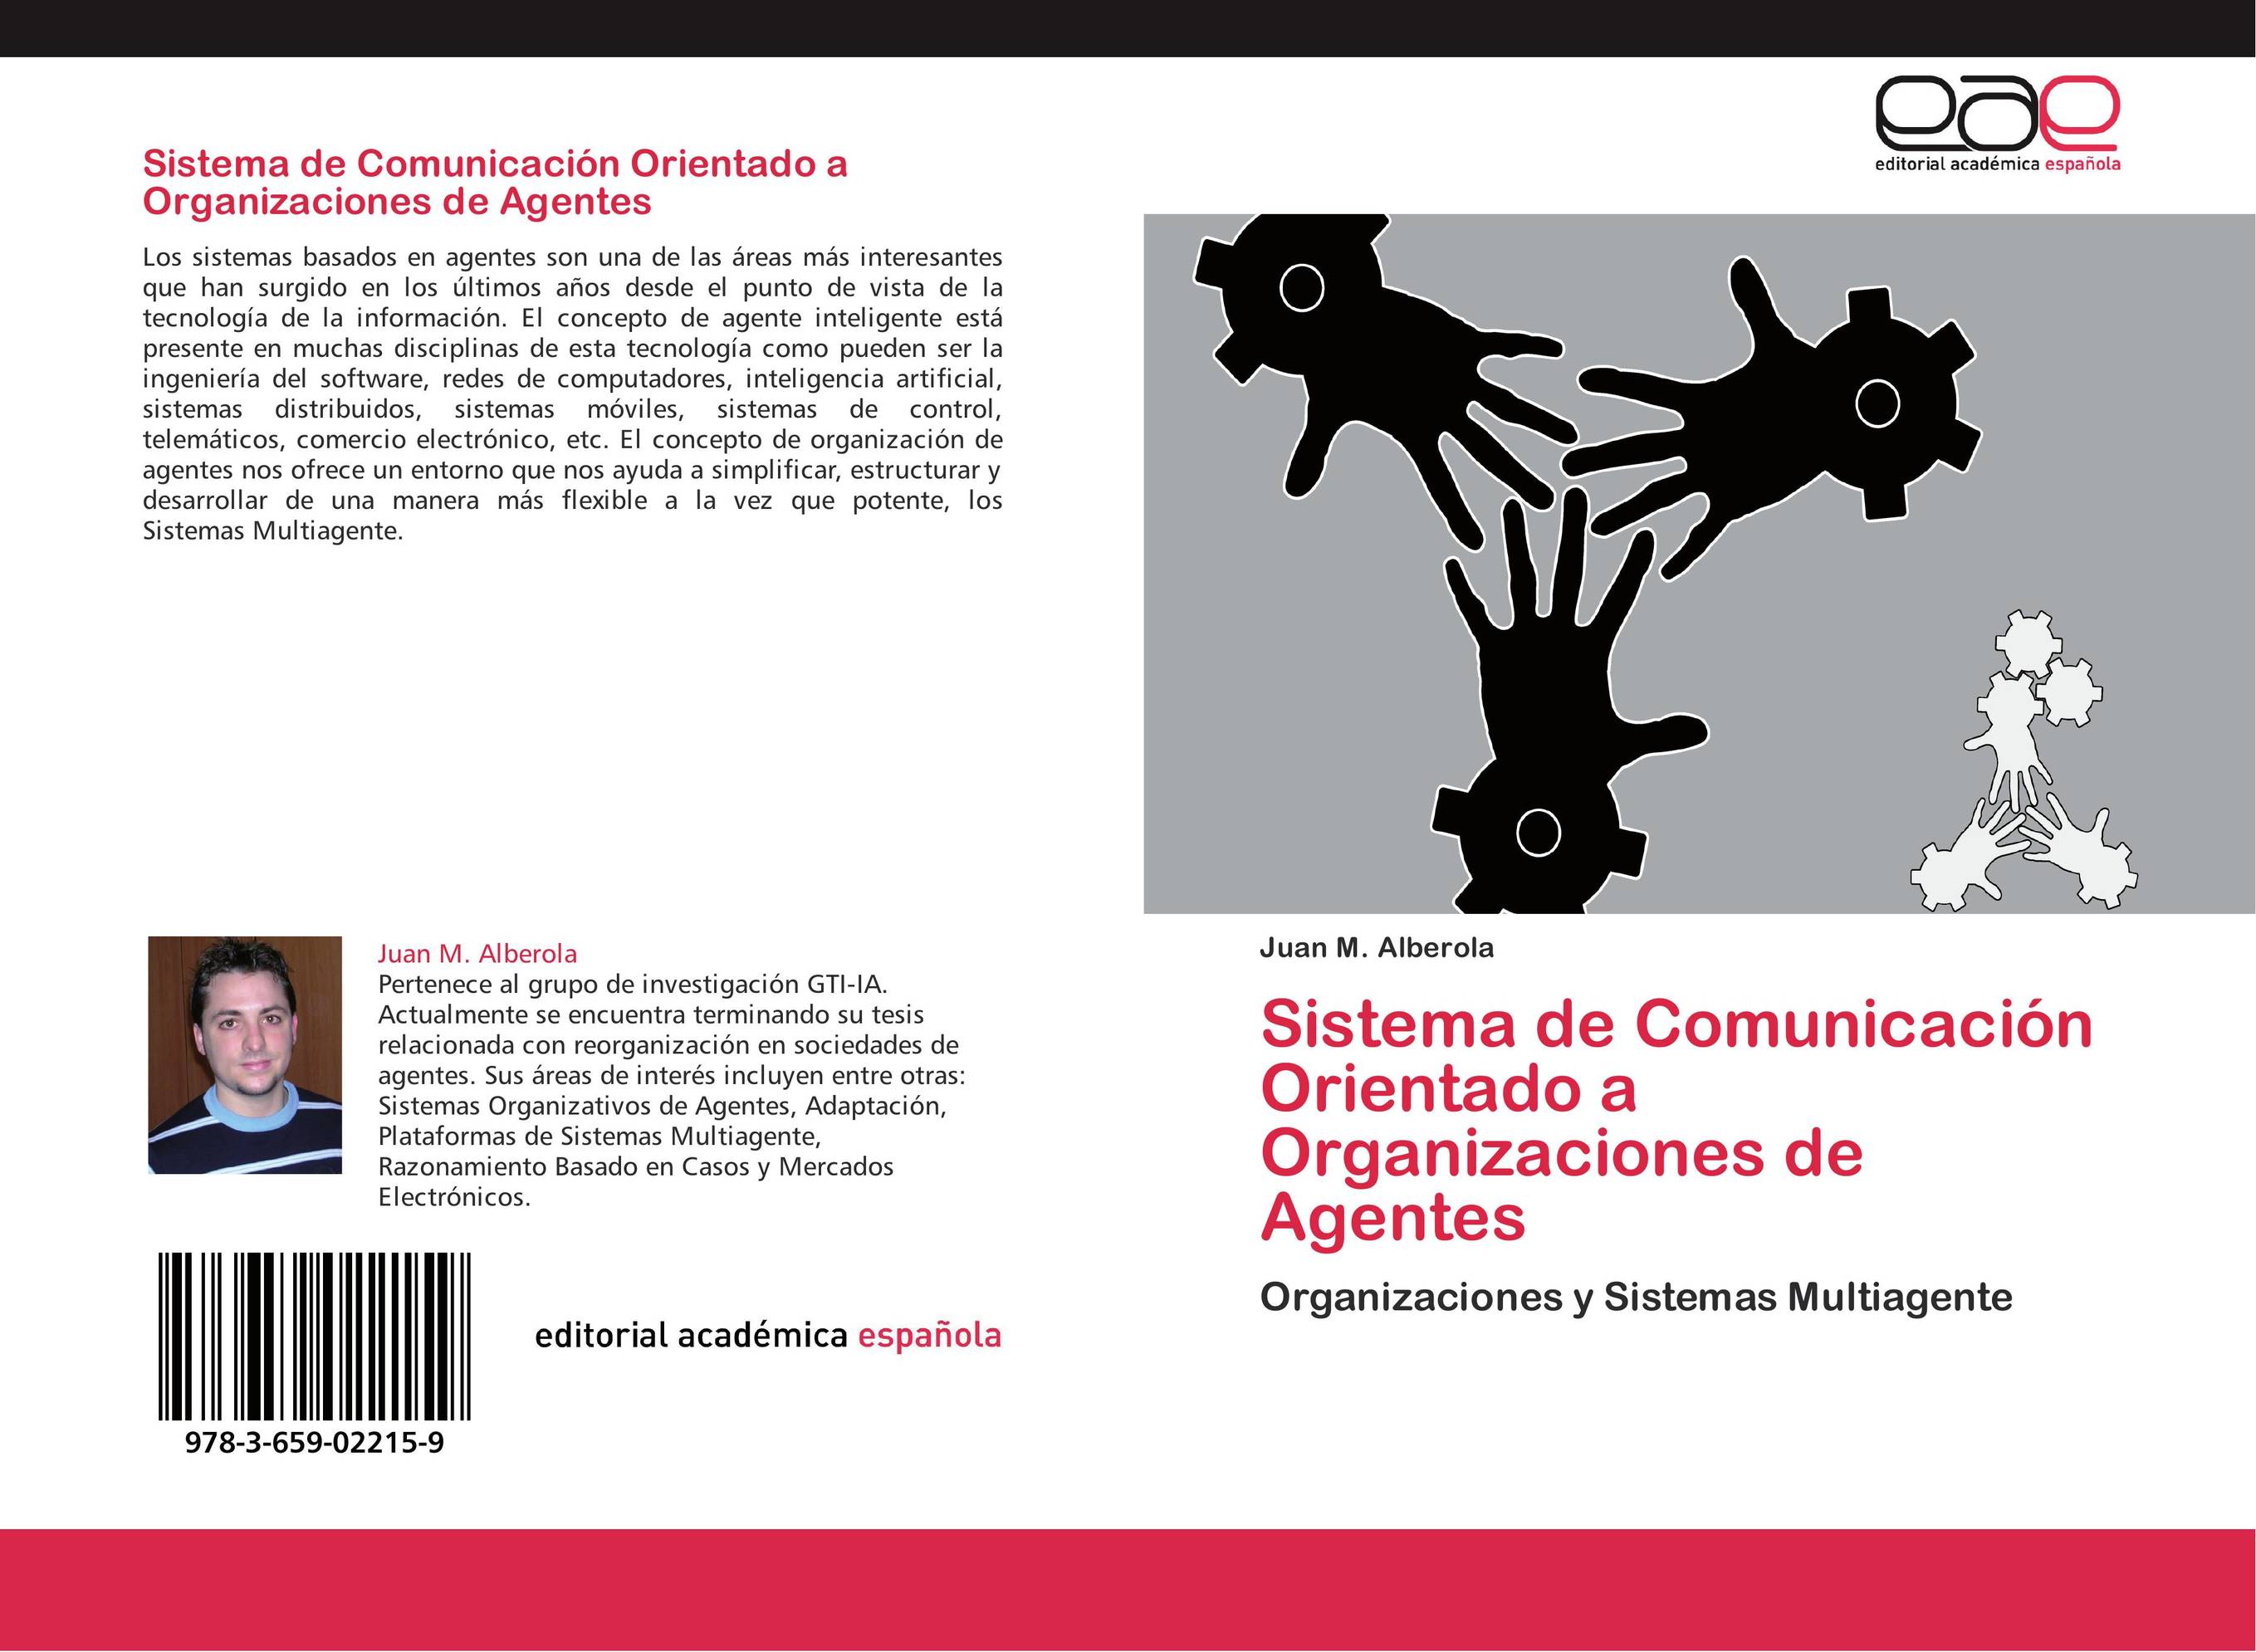 Sistema de Comunicación Orientado a Organizaciones de Agentes